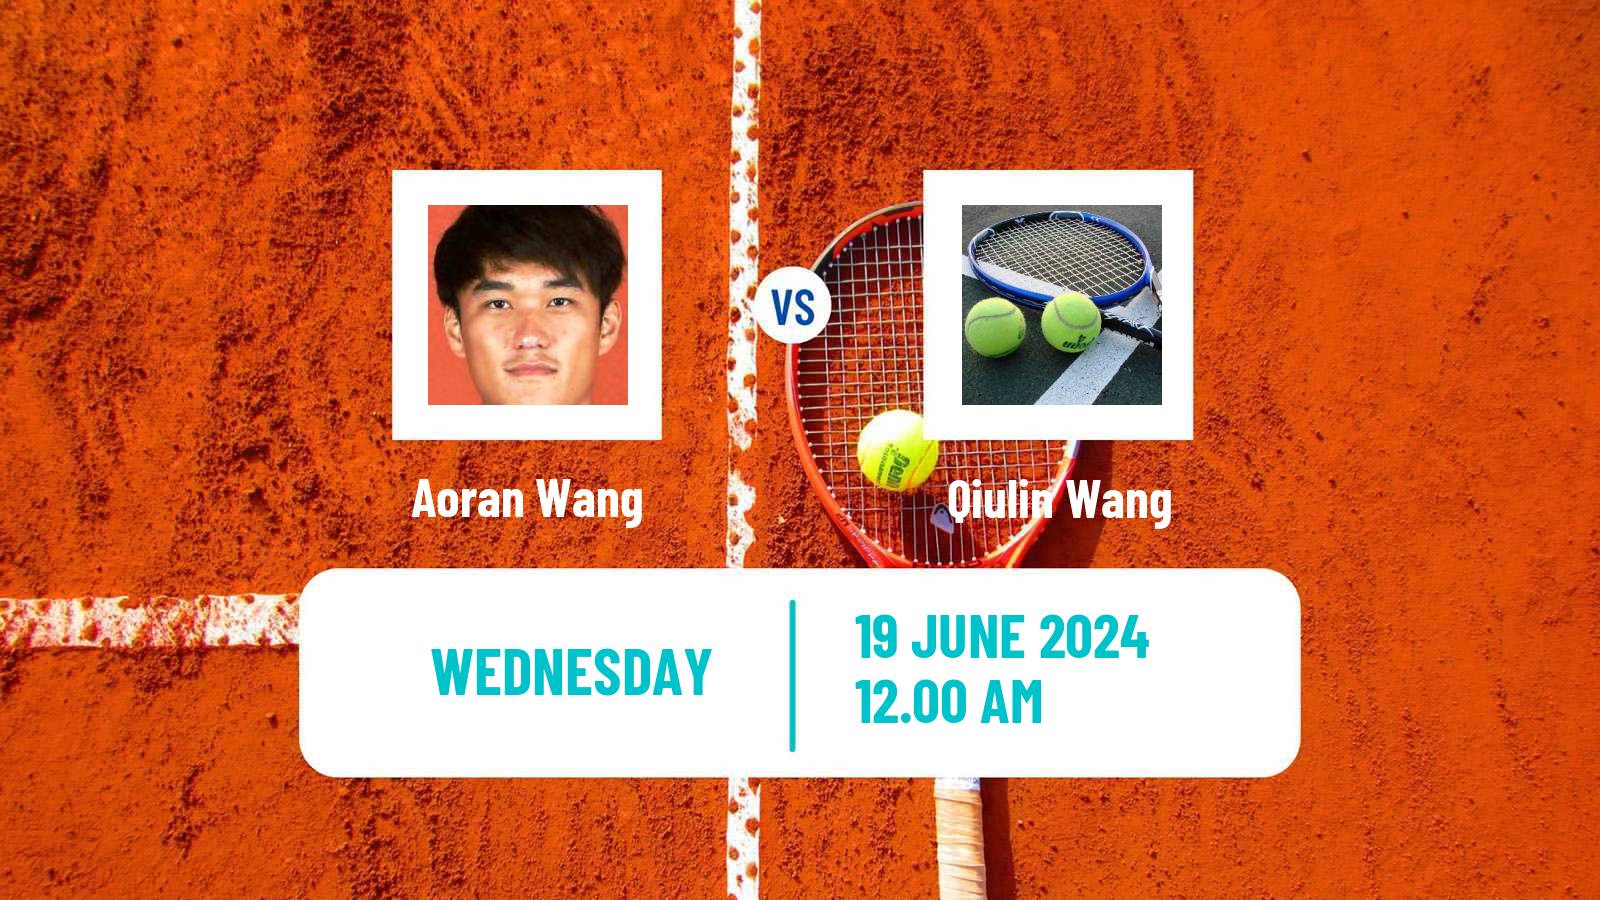 Tennis ITF M25 Luzhou Men Aoran Wang - Qiulin Wang